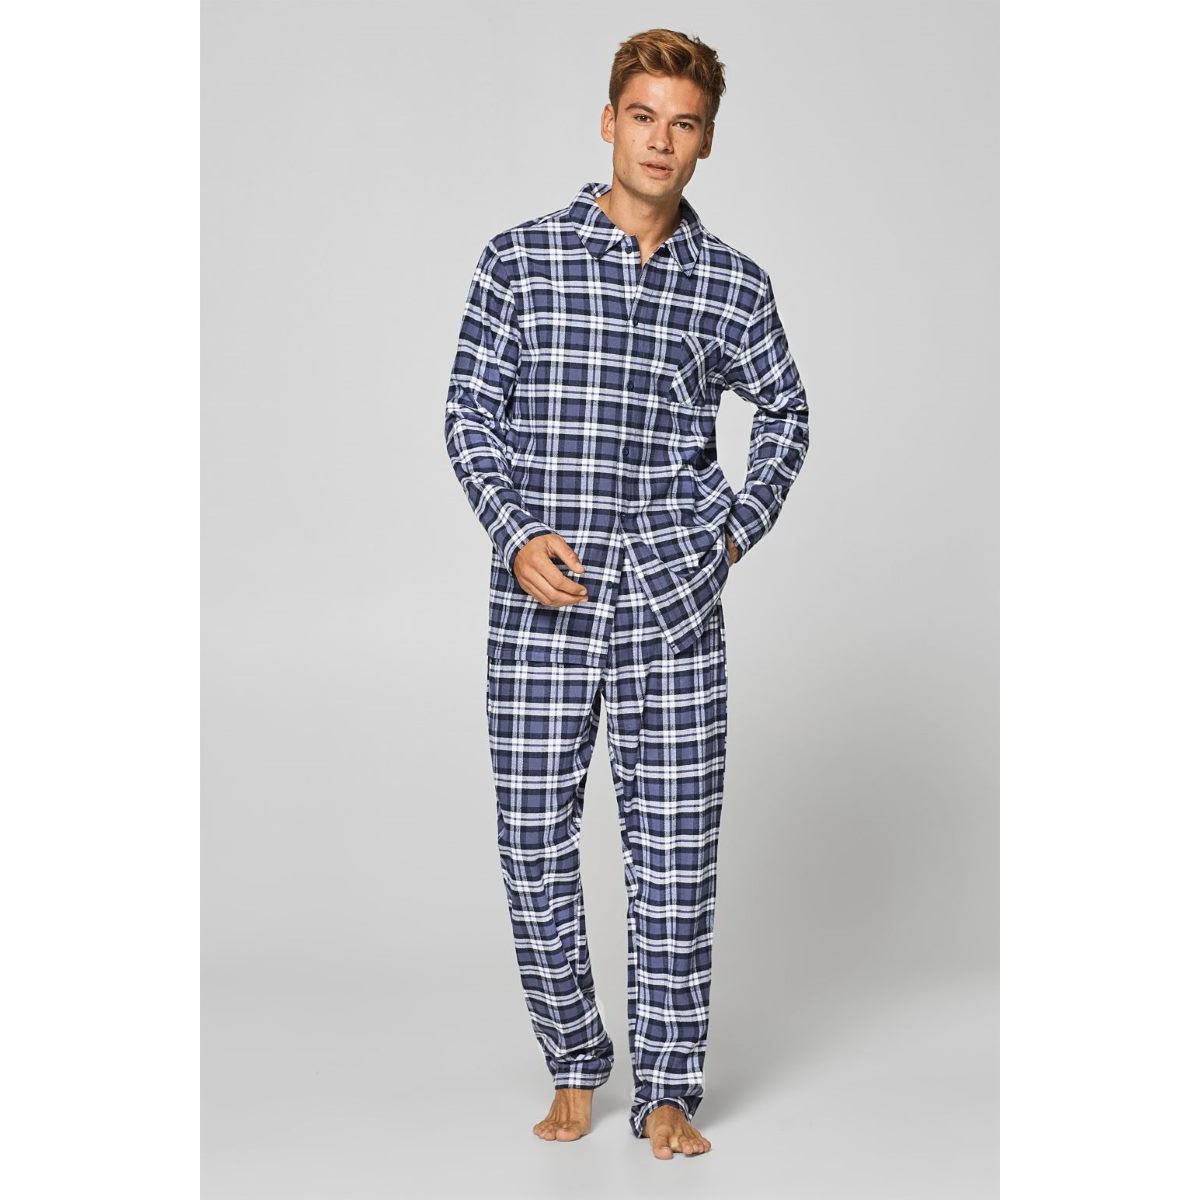 spade plakband Eik Esprit flanellen heren pyjama geruit | Bestel eenvoudig online | Gratis  verzending | Snel in huis | Online de mooiste pyjama's, nachthemden,  ondermode en meer